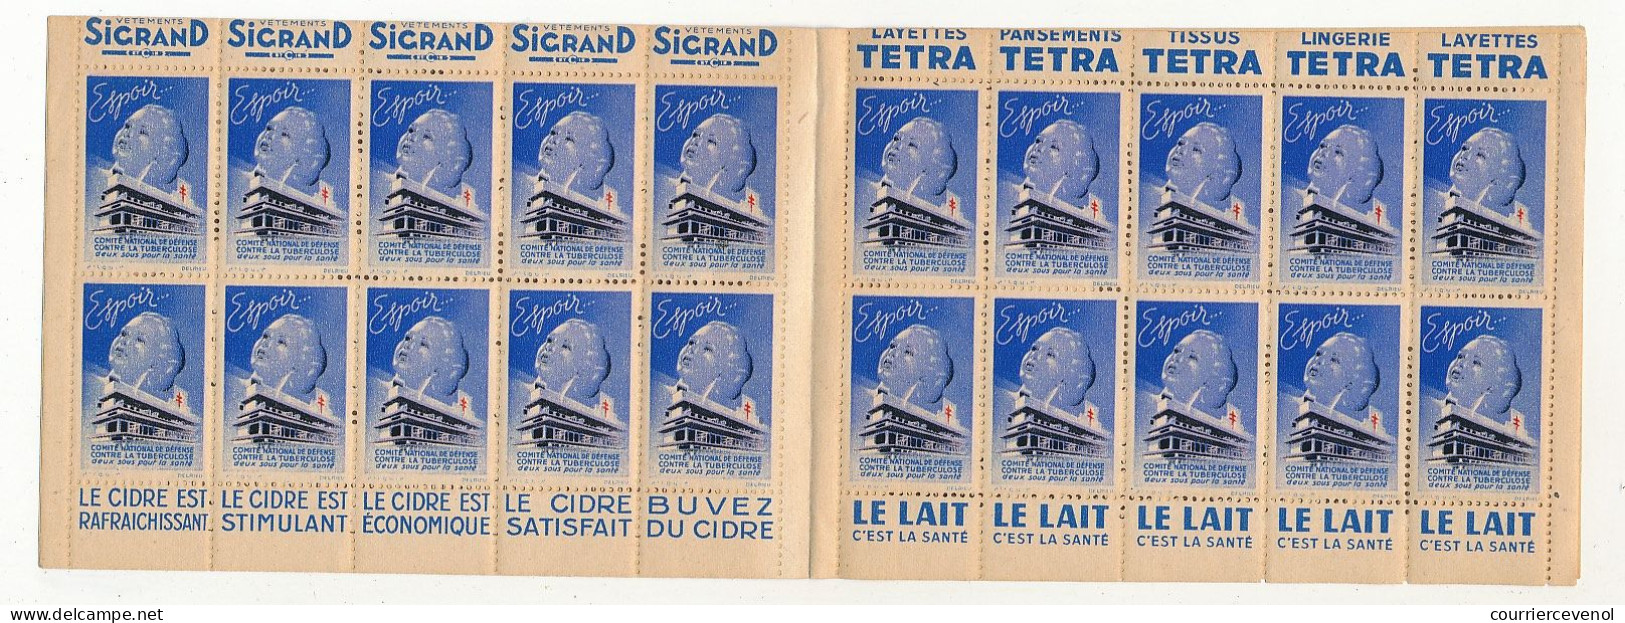 Carnet Anti-tuberculeux 1939 - 13ème Campagne - 2 Fr - 20 Timbres à 10c  - Pubs Sigrand, Cidre, Tissus Tetra, Lait... - Blocks Und Markenheftchen